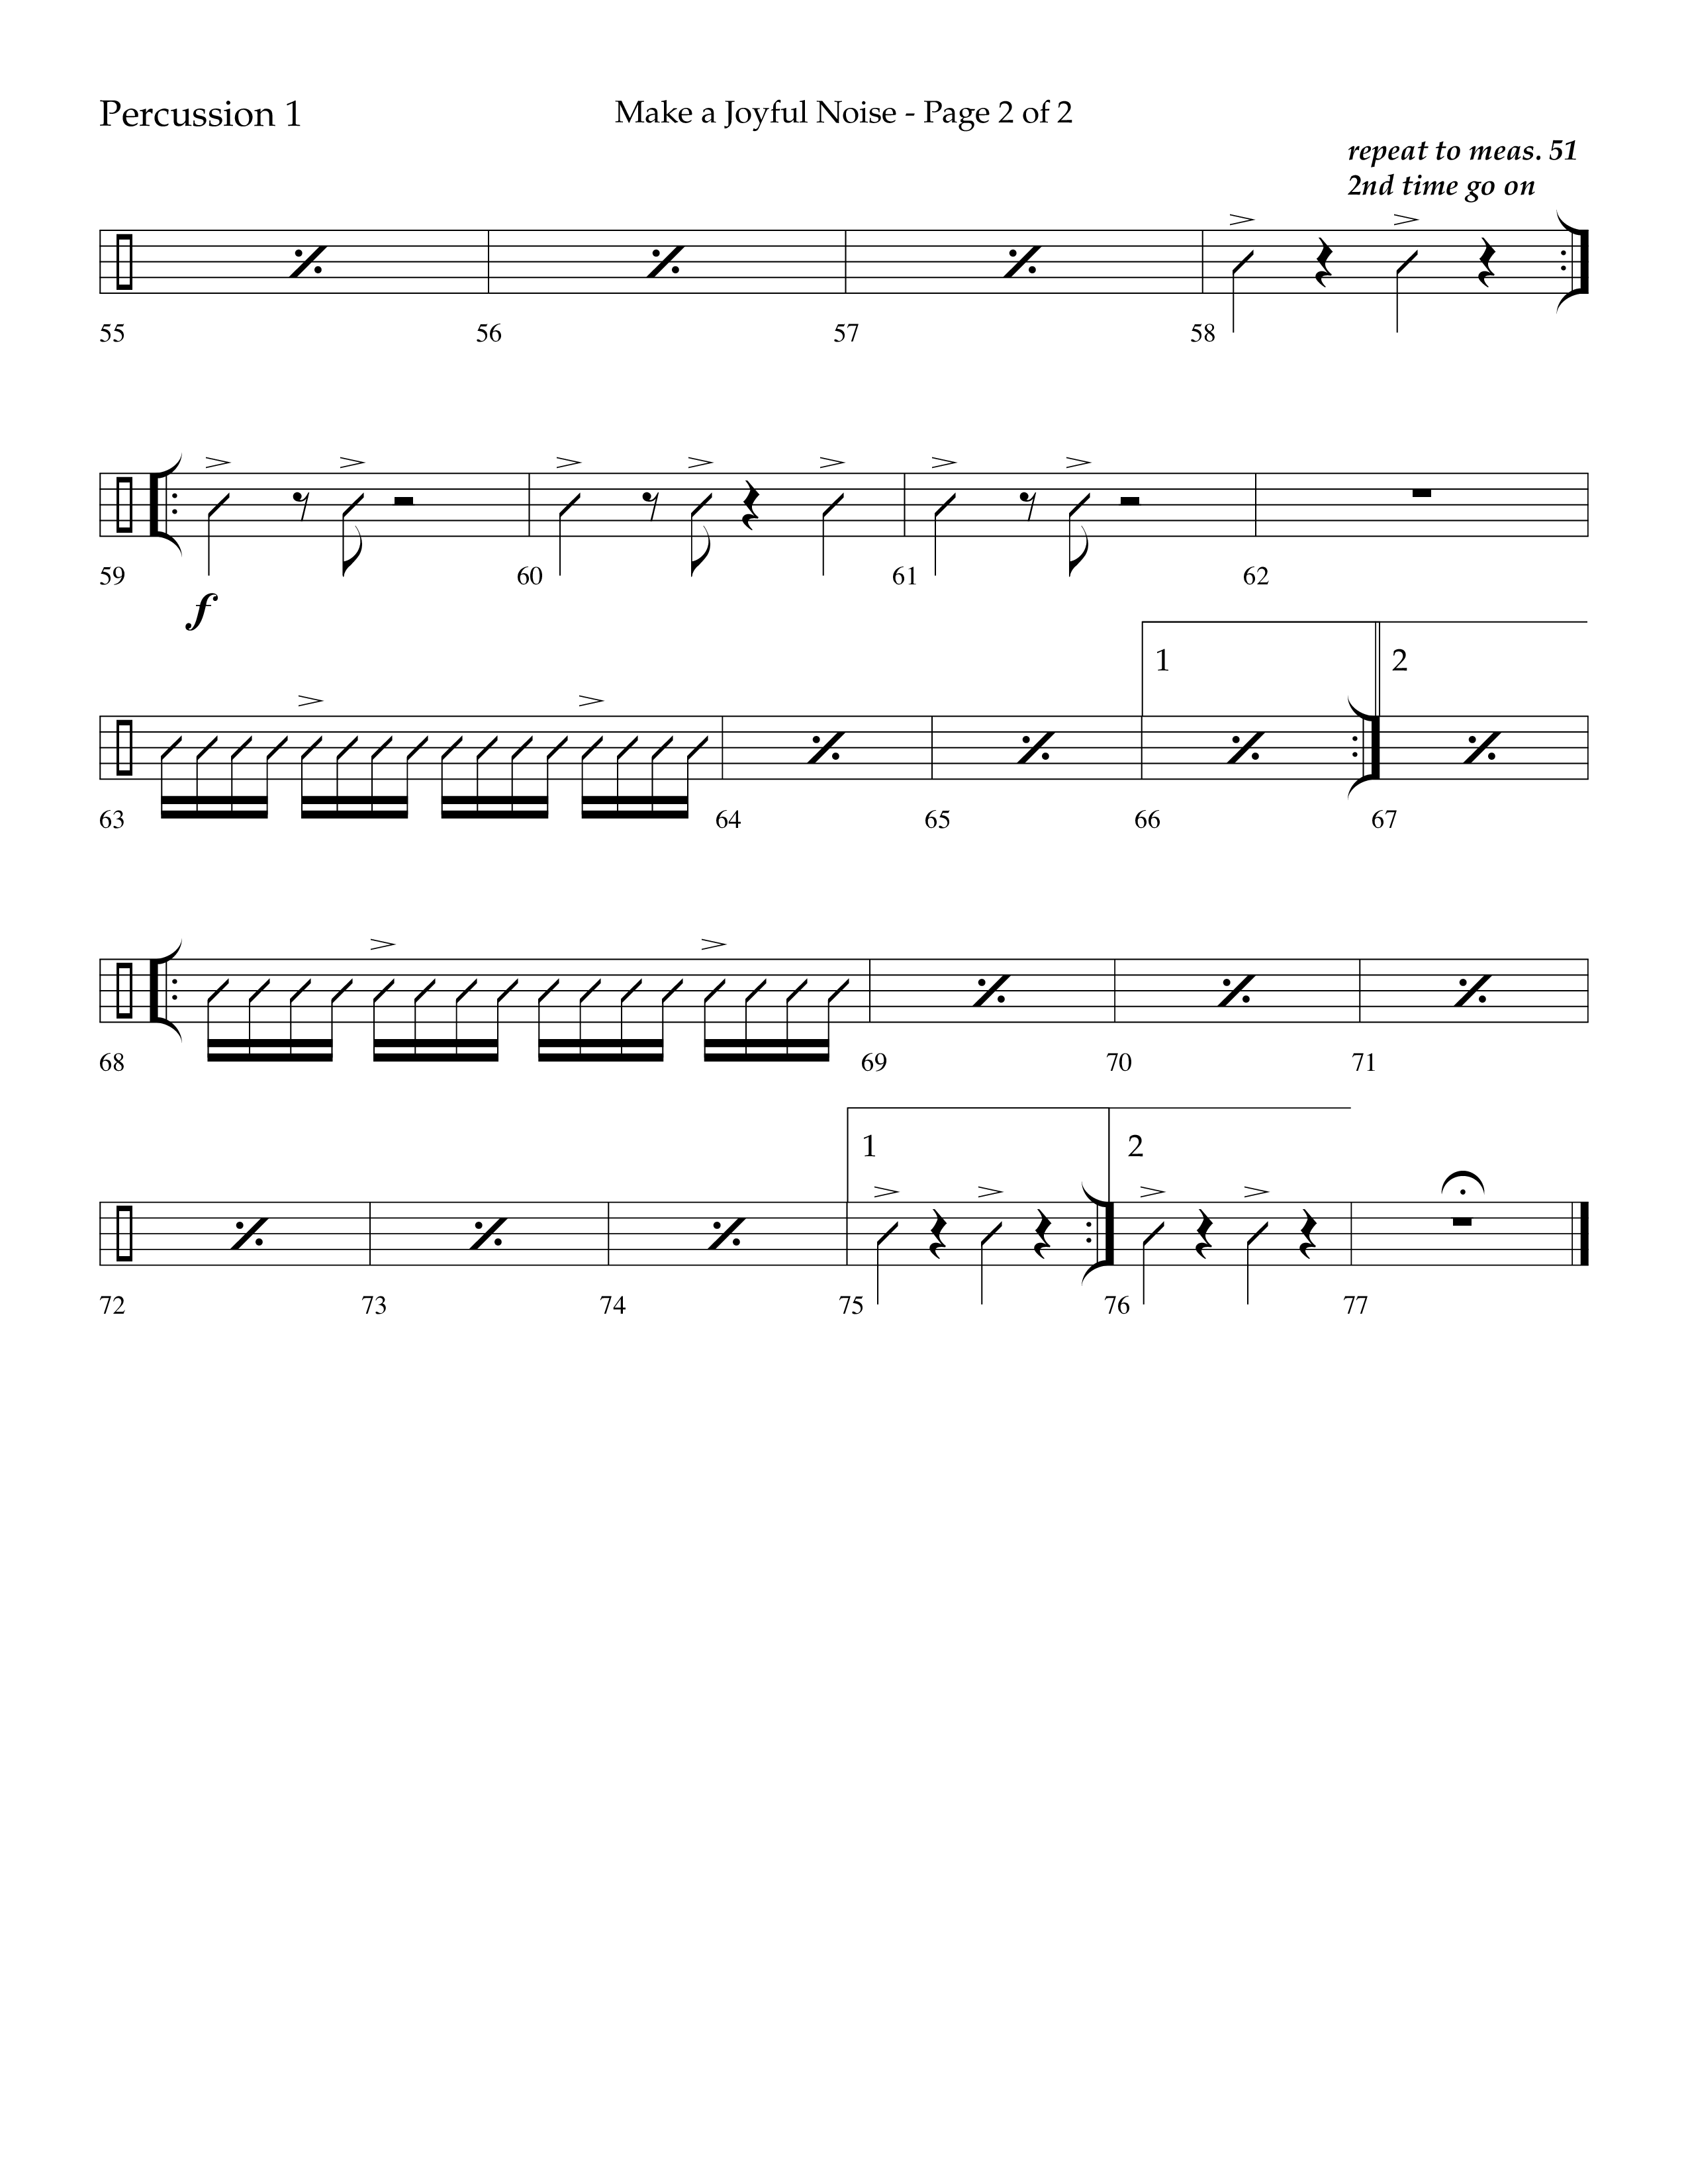 Make A Joyful Noise (Choral Anthem SATB) Percussion 1/2 (Lifeway Choral / Arr. David Wise / Orch. Daniel Semsen)